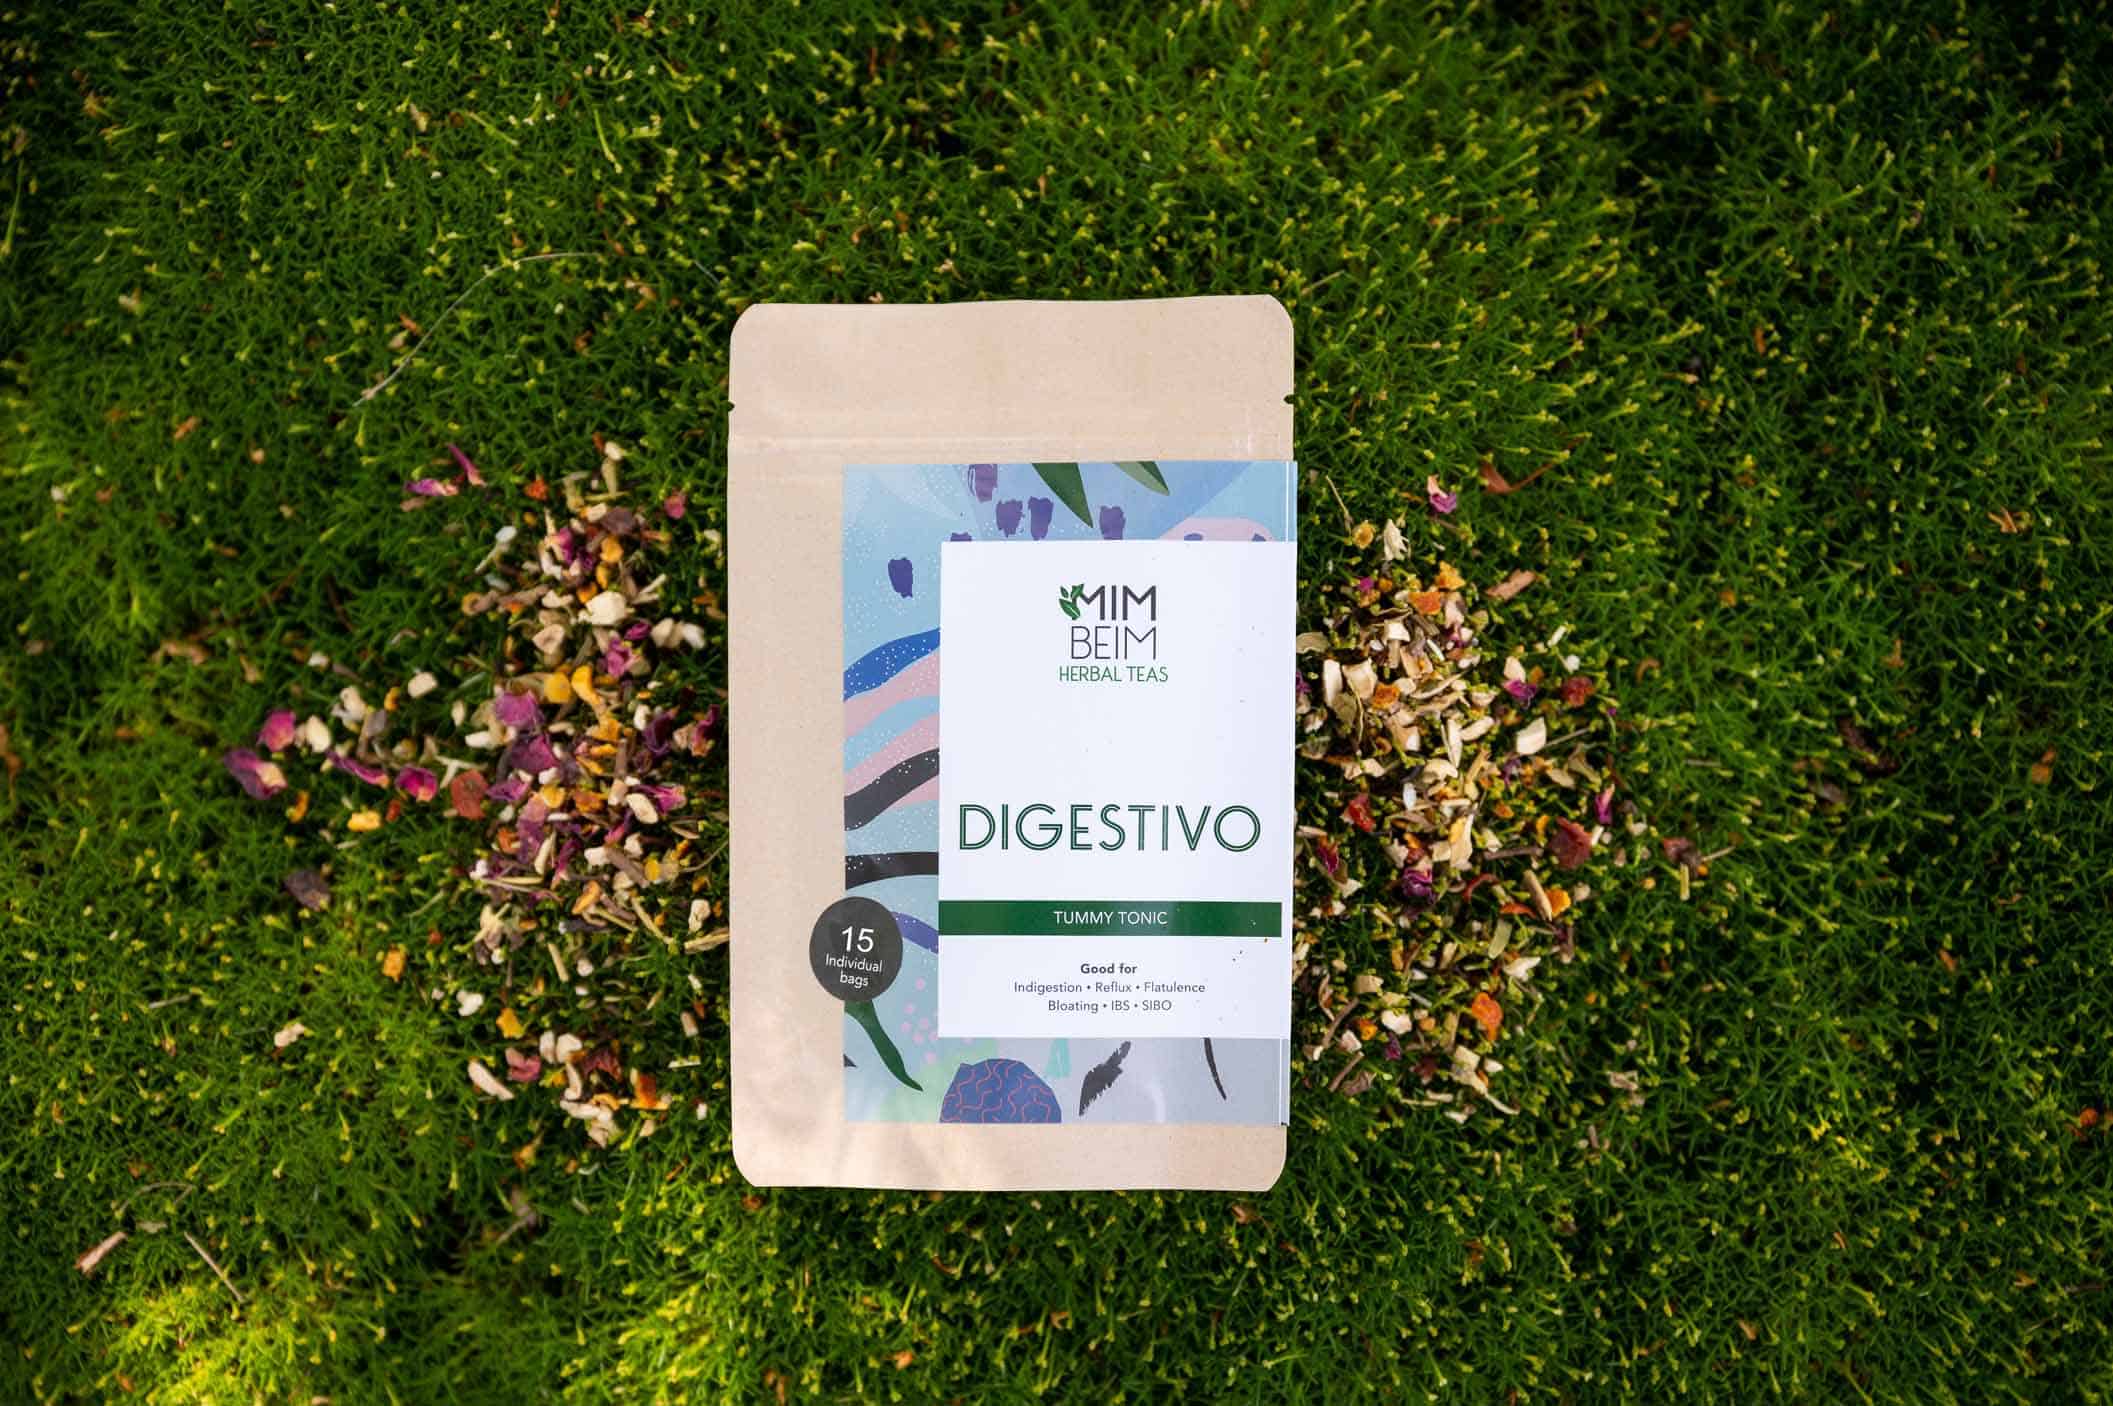 Digestivo - Herbal Tea to help digestion